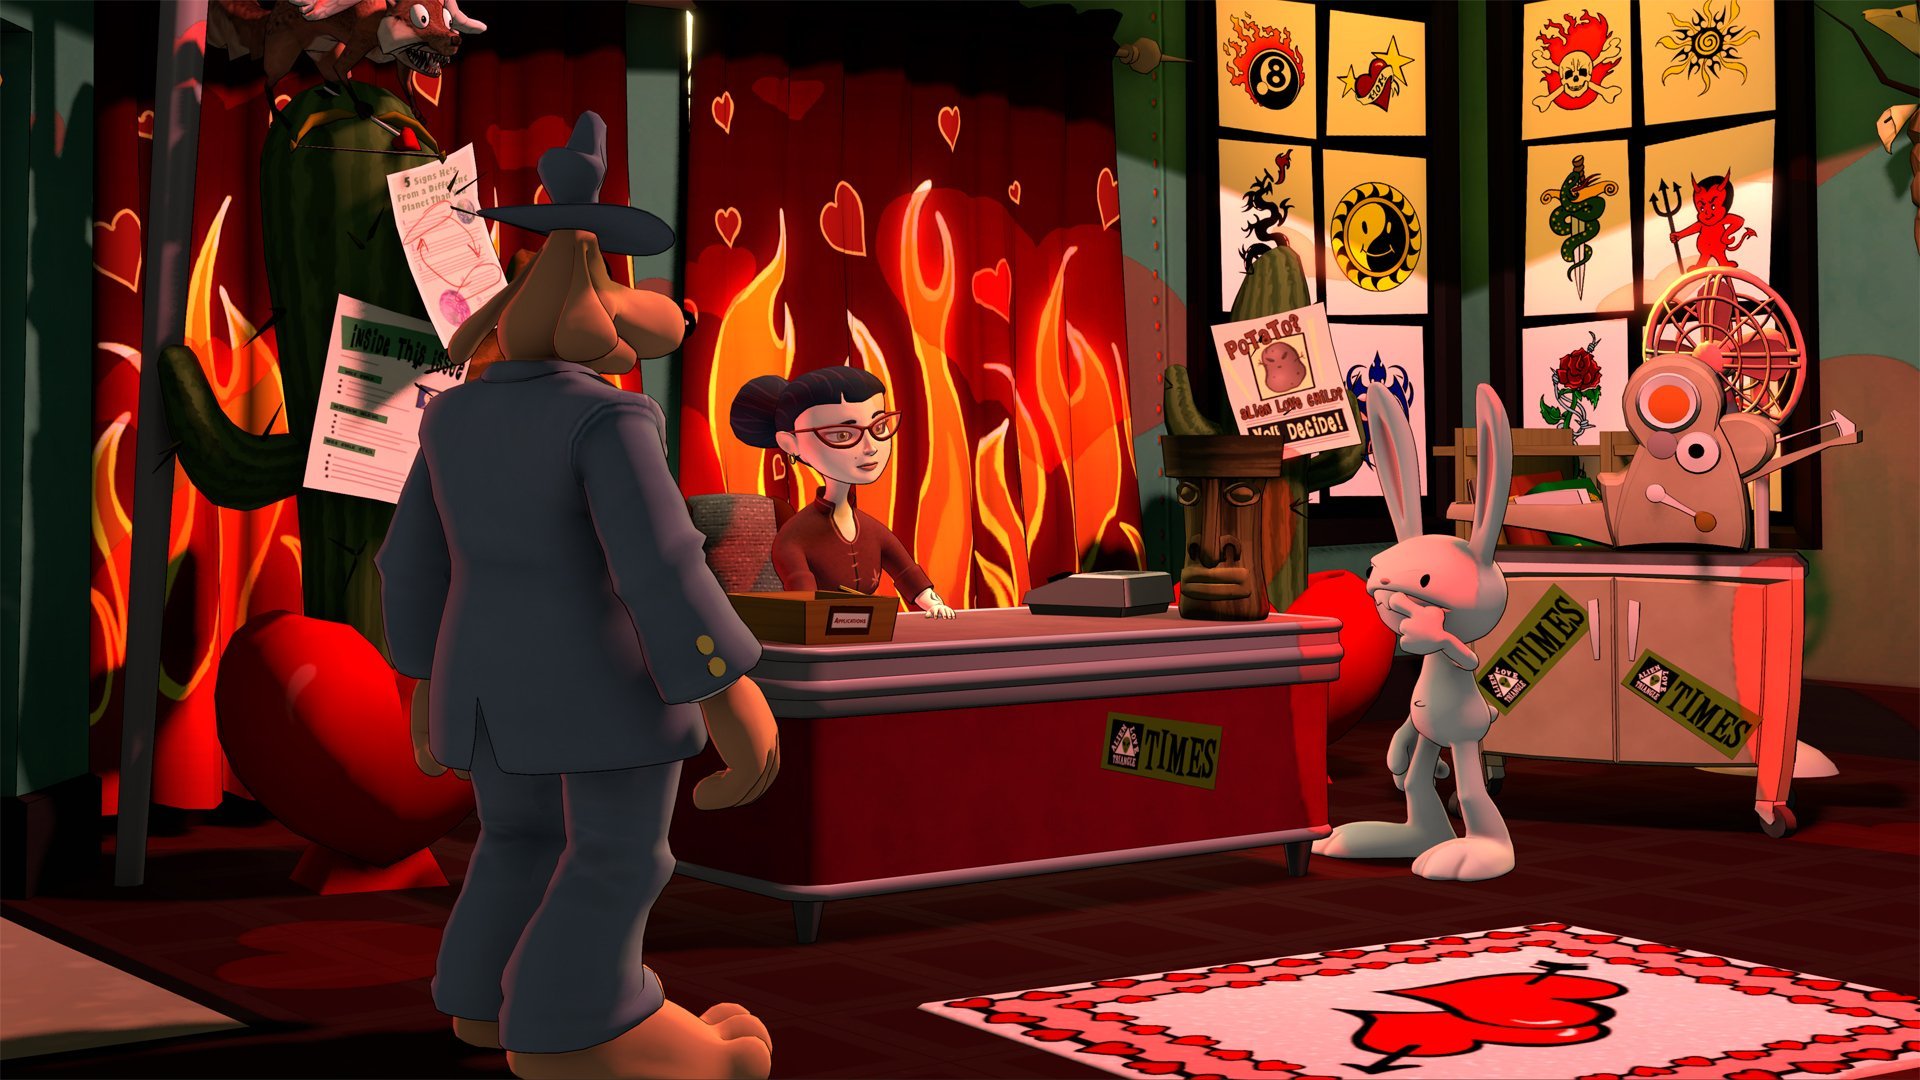 Скриншот 1 к игре Sam & Max Save the World v.1.0.7 [GOG] (2006-2020) скачать торрент Лицензия